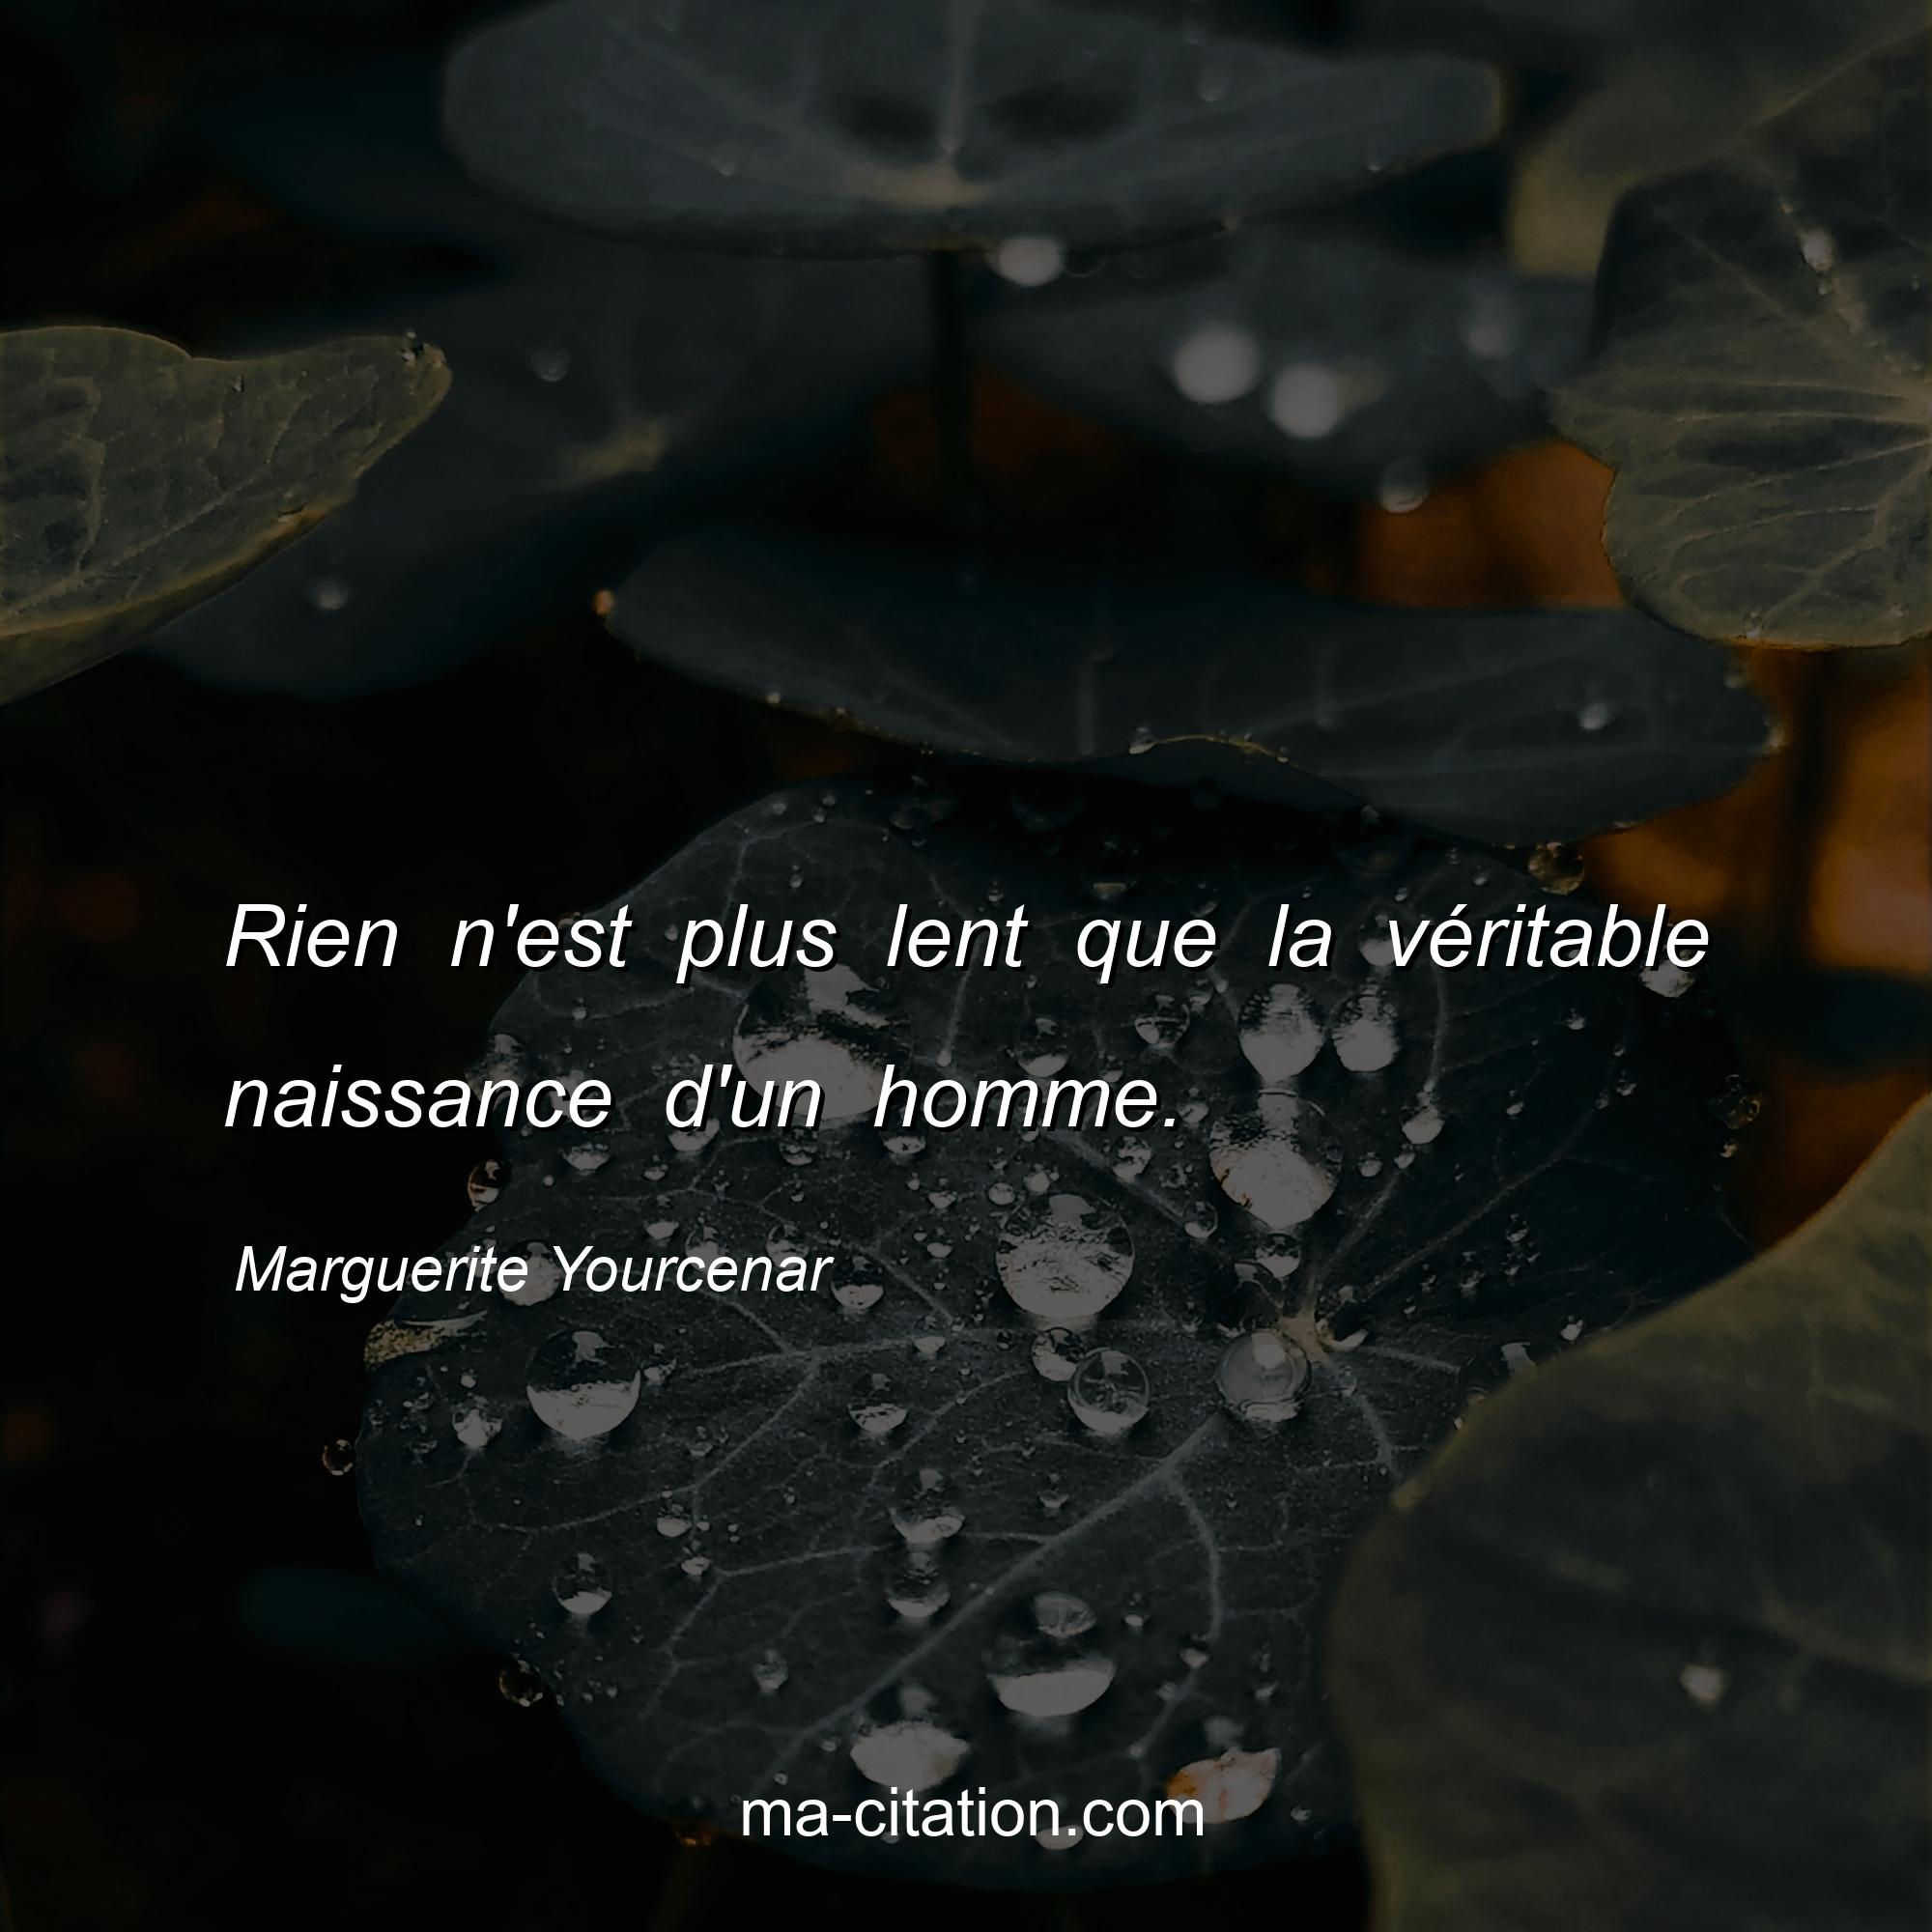 Marguerite Yourcenar : Rien n'est plus lent que la véritable naissance d'un homme.